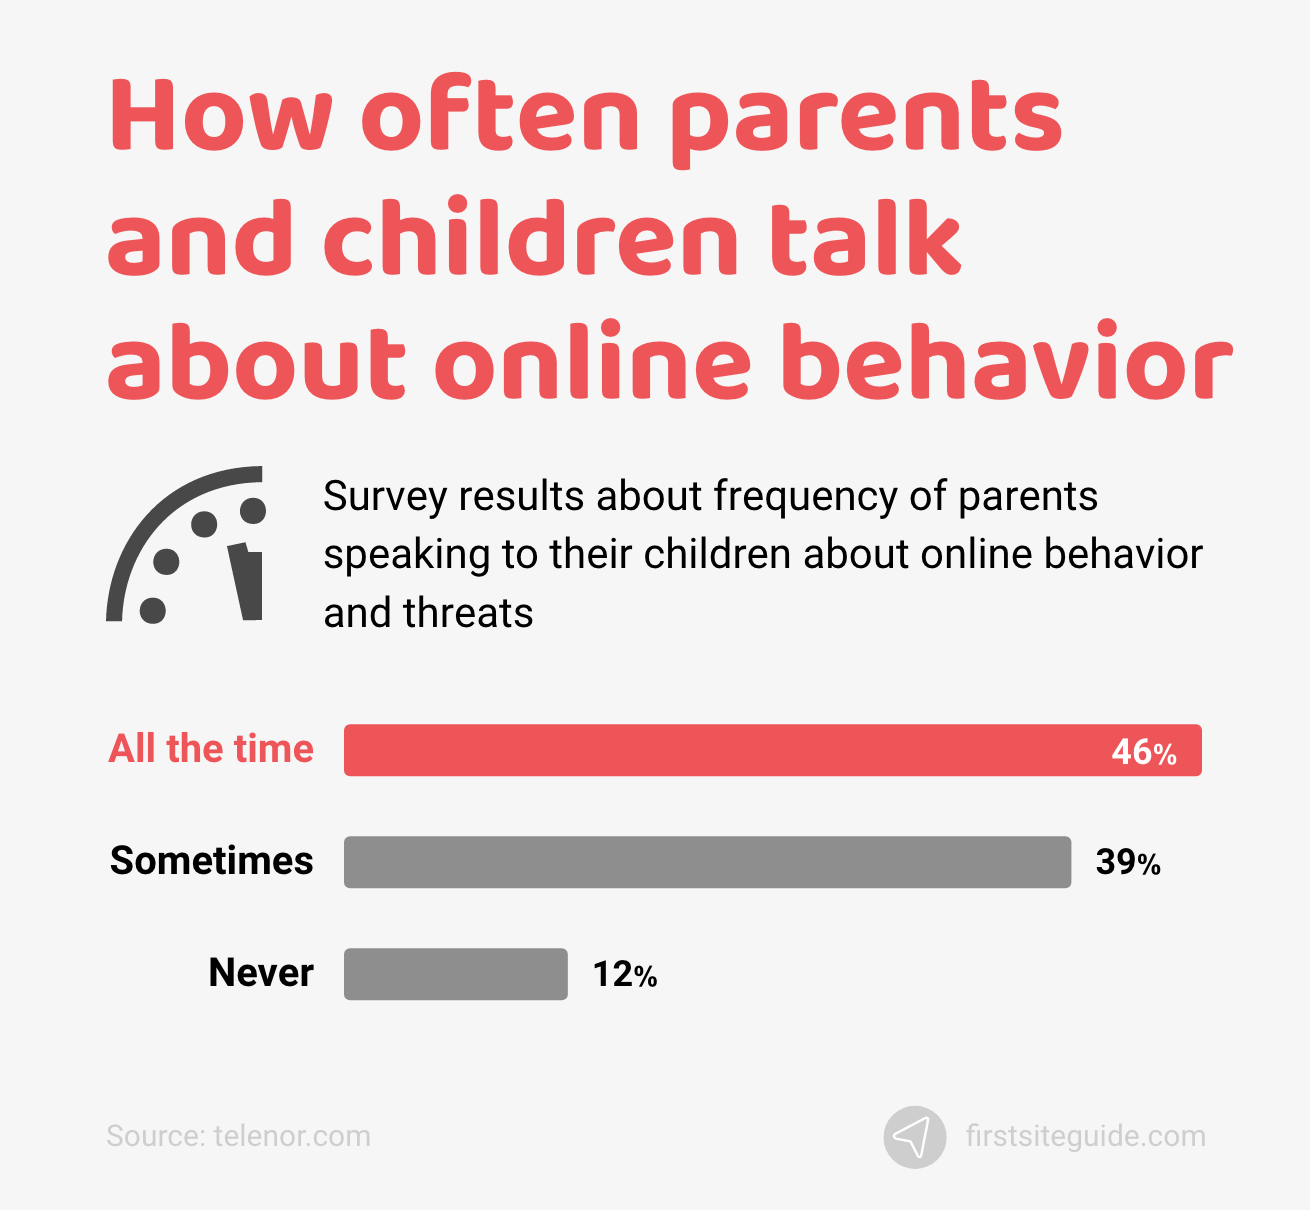 Wie oft sprechen Eltern und Kinder über Online-Verhalten